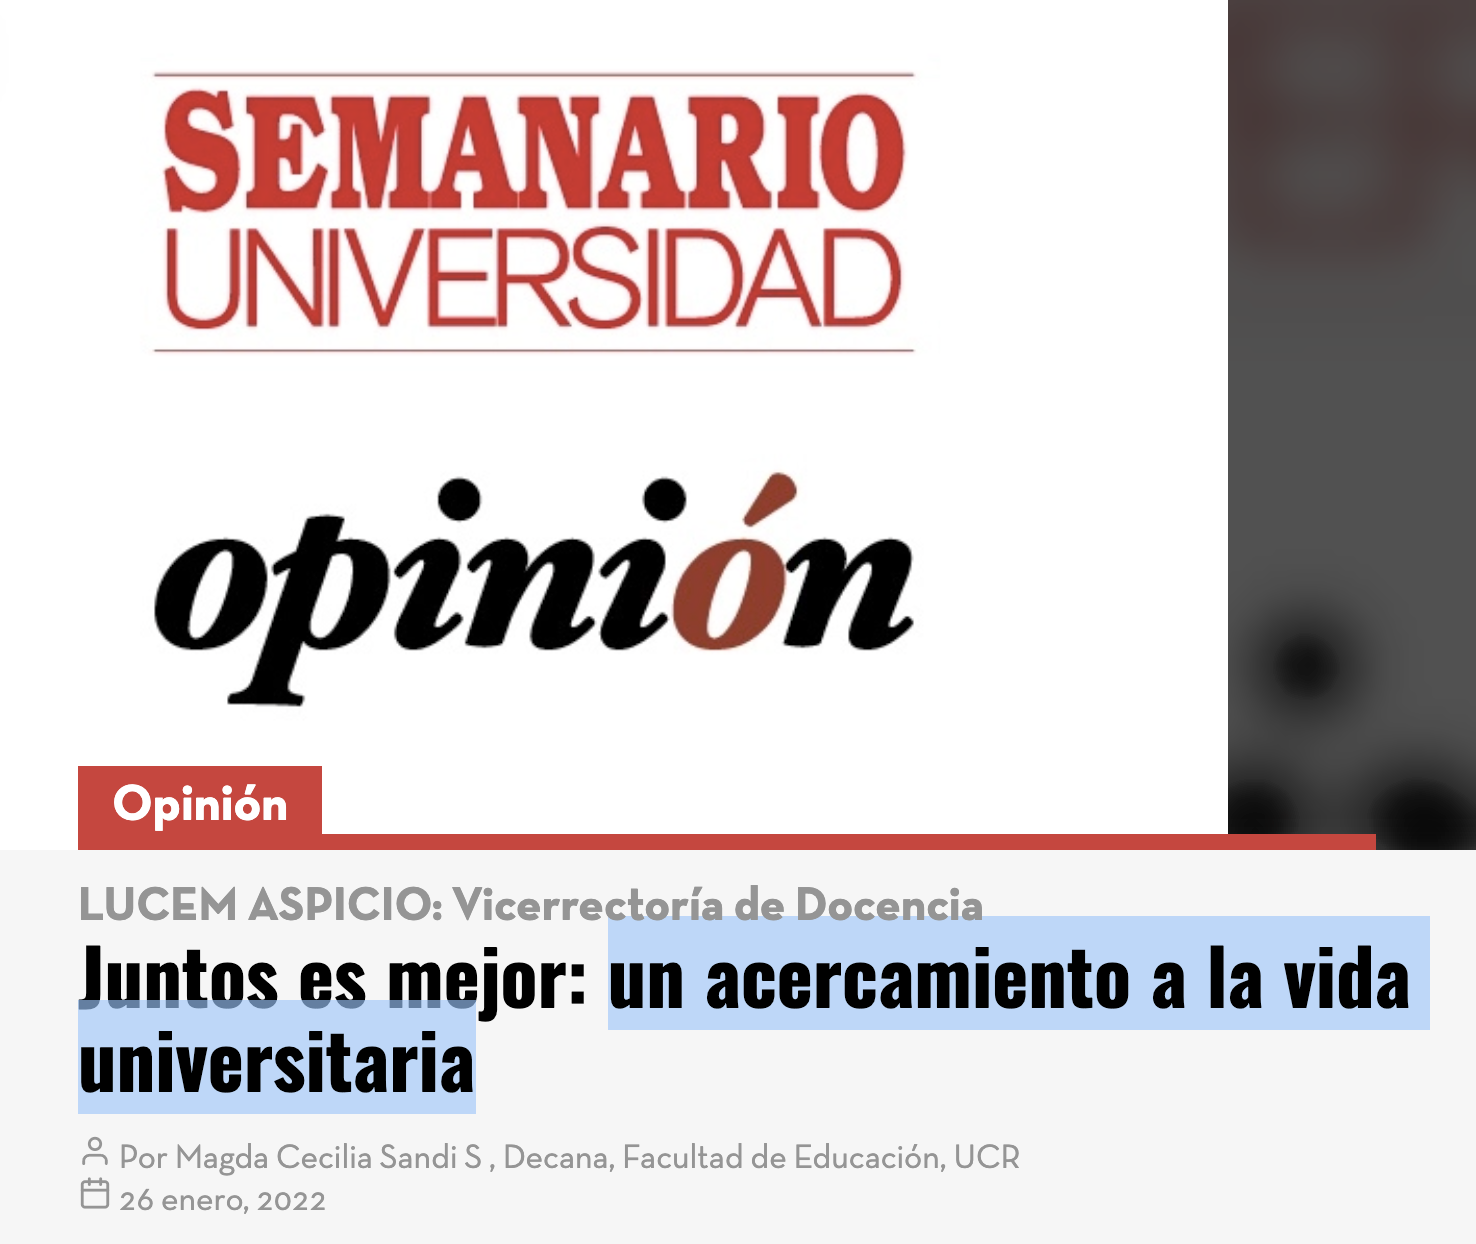 Semanario Universidad: "Juntos es mejor: un acercamiento a la vida universitaria"